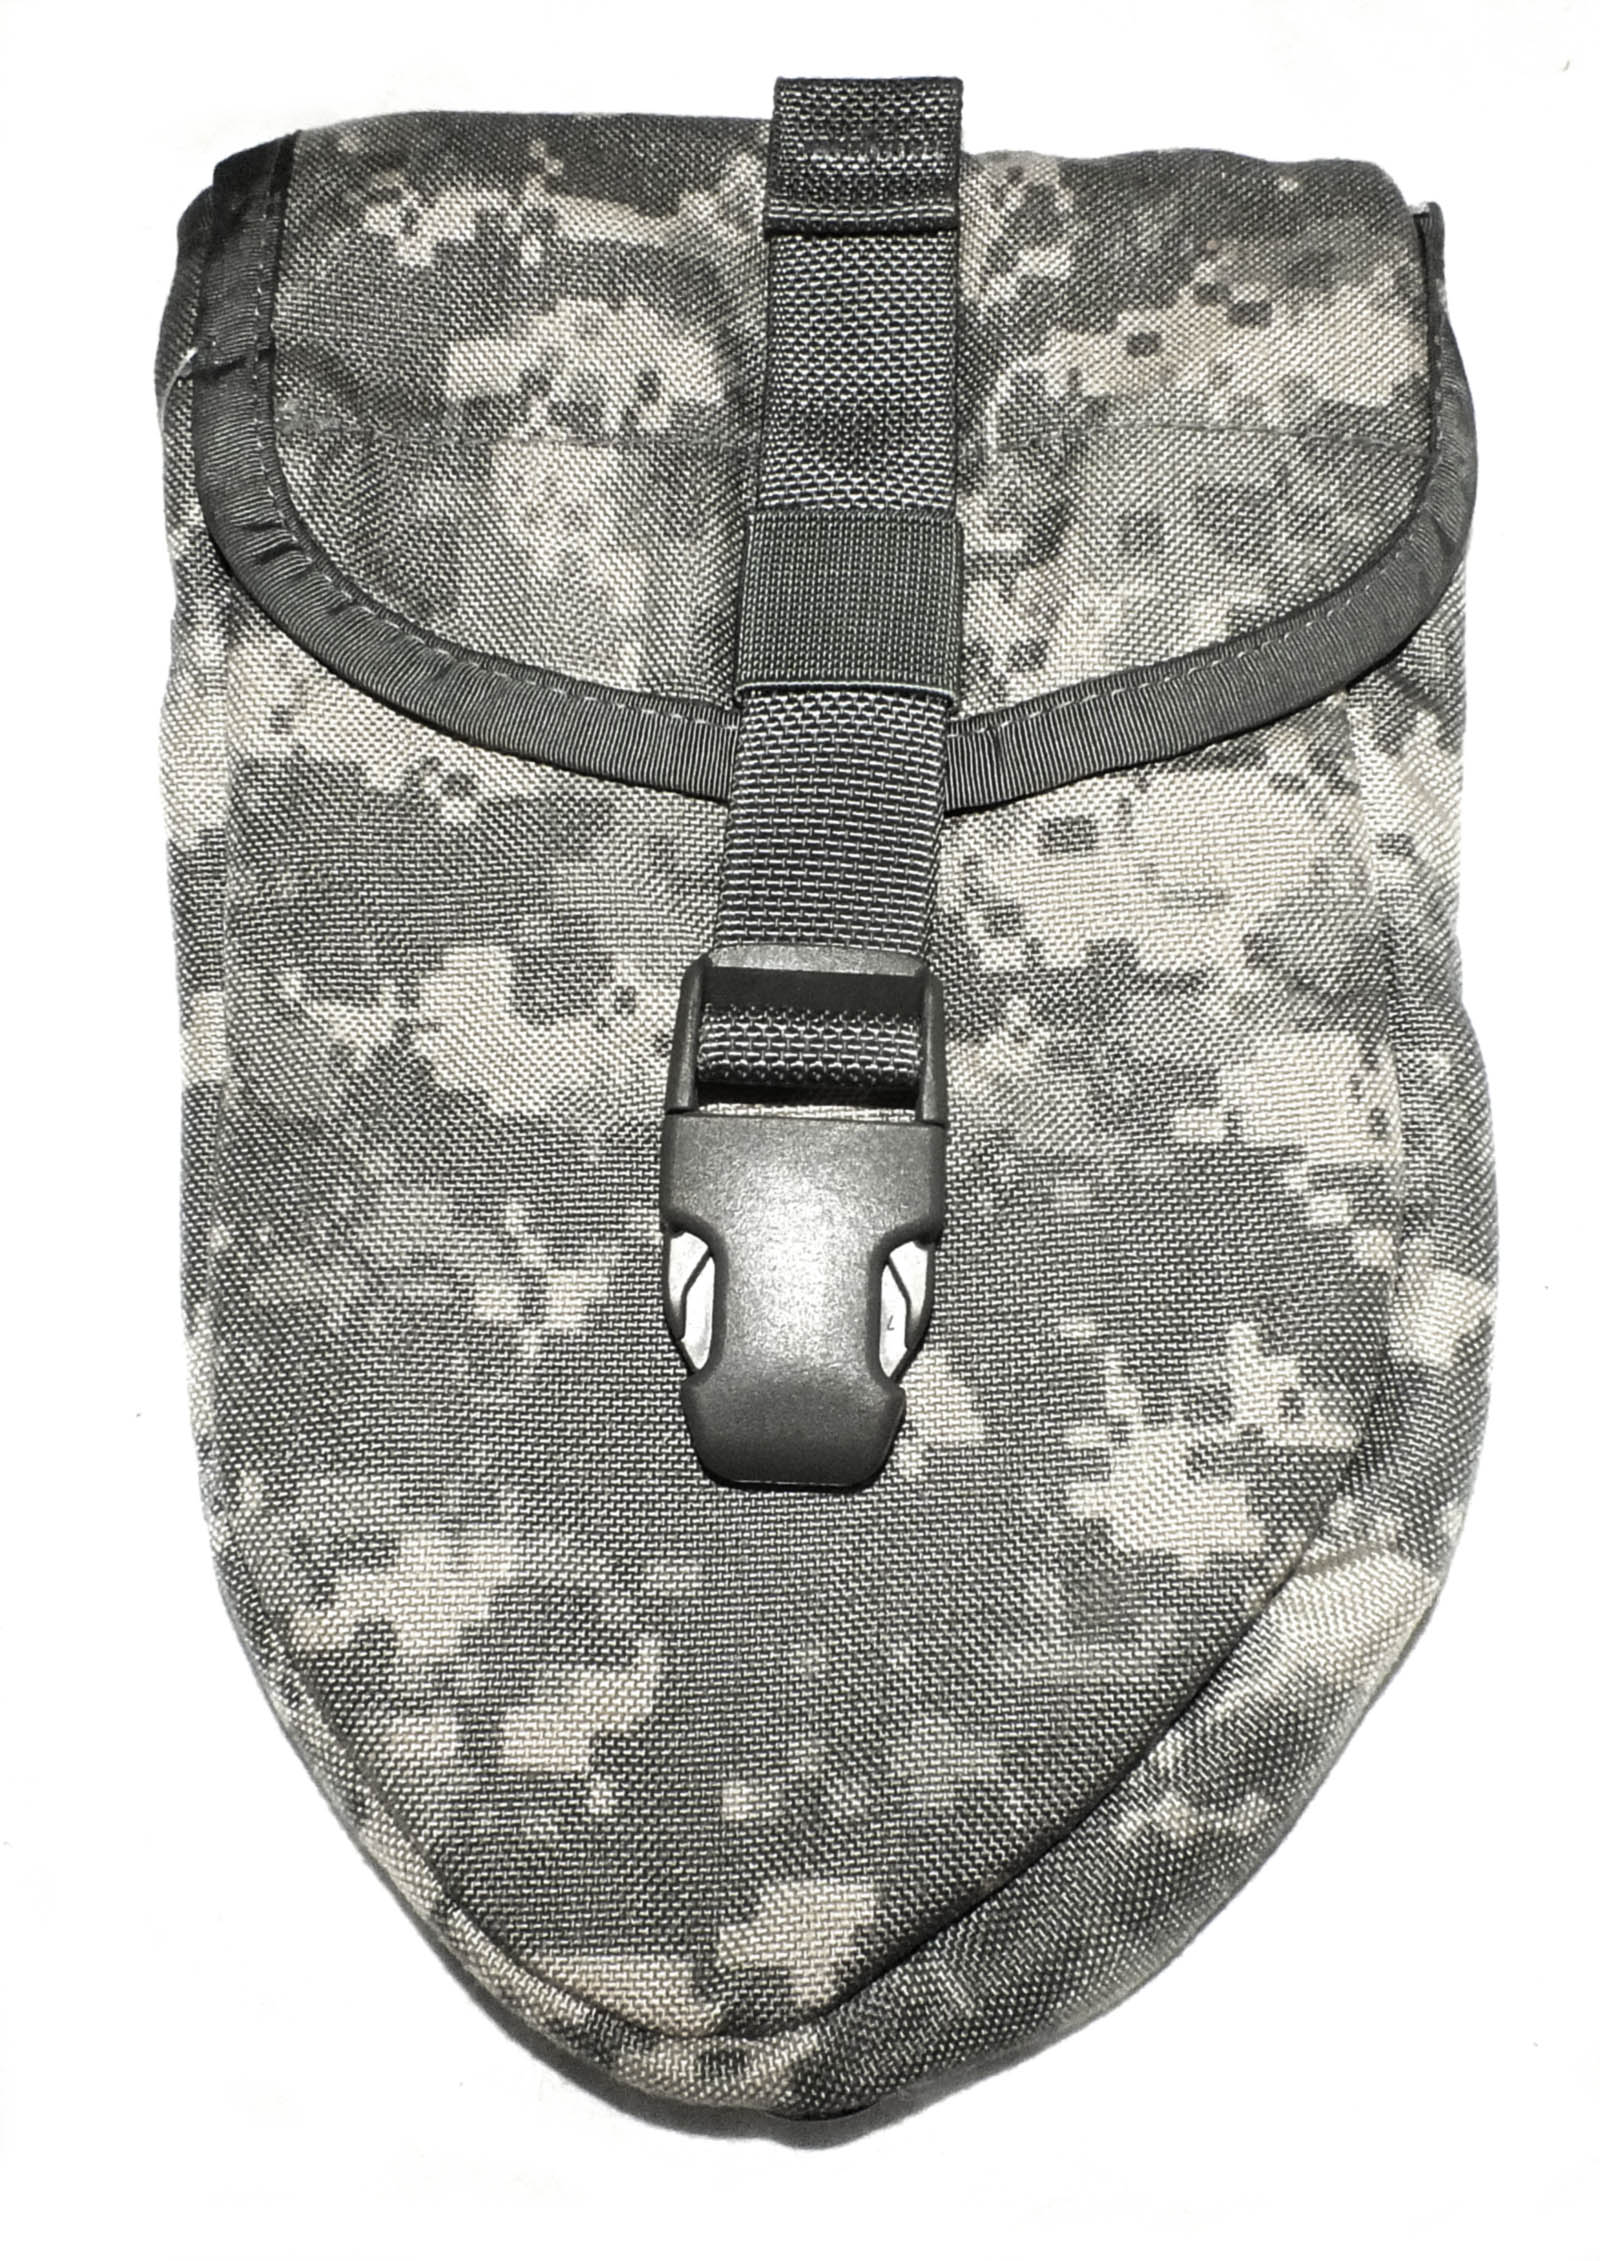 Orig US Army Tasche für Klappspaten Klappspatentasche  Carrier Entrenching Tool